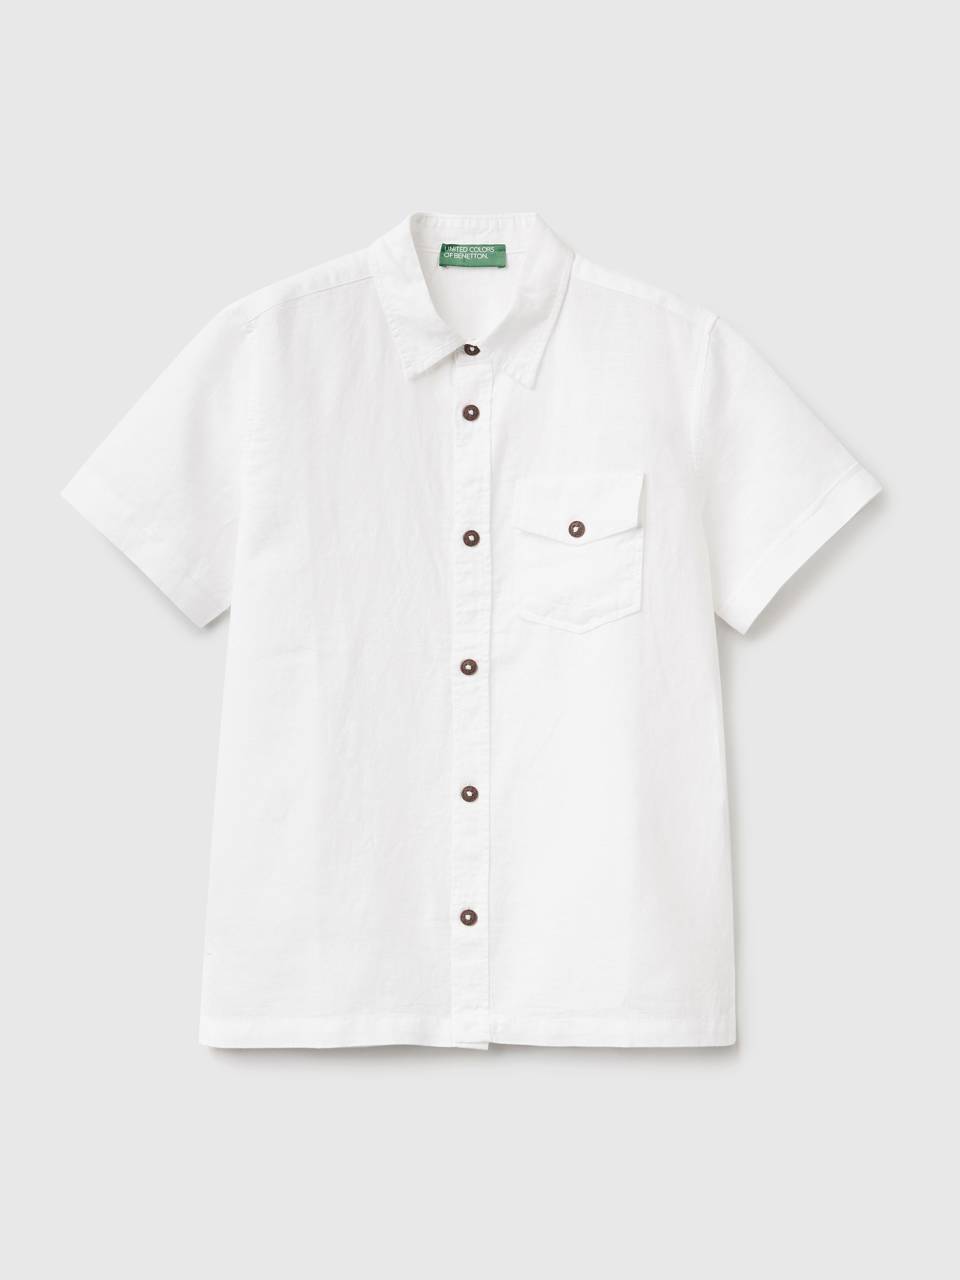 Benetton short sleeve shirt in linen blend. 1